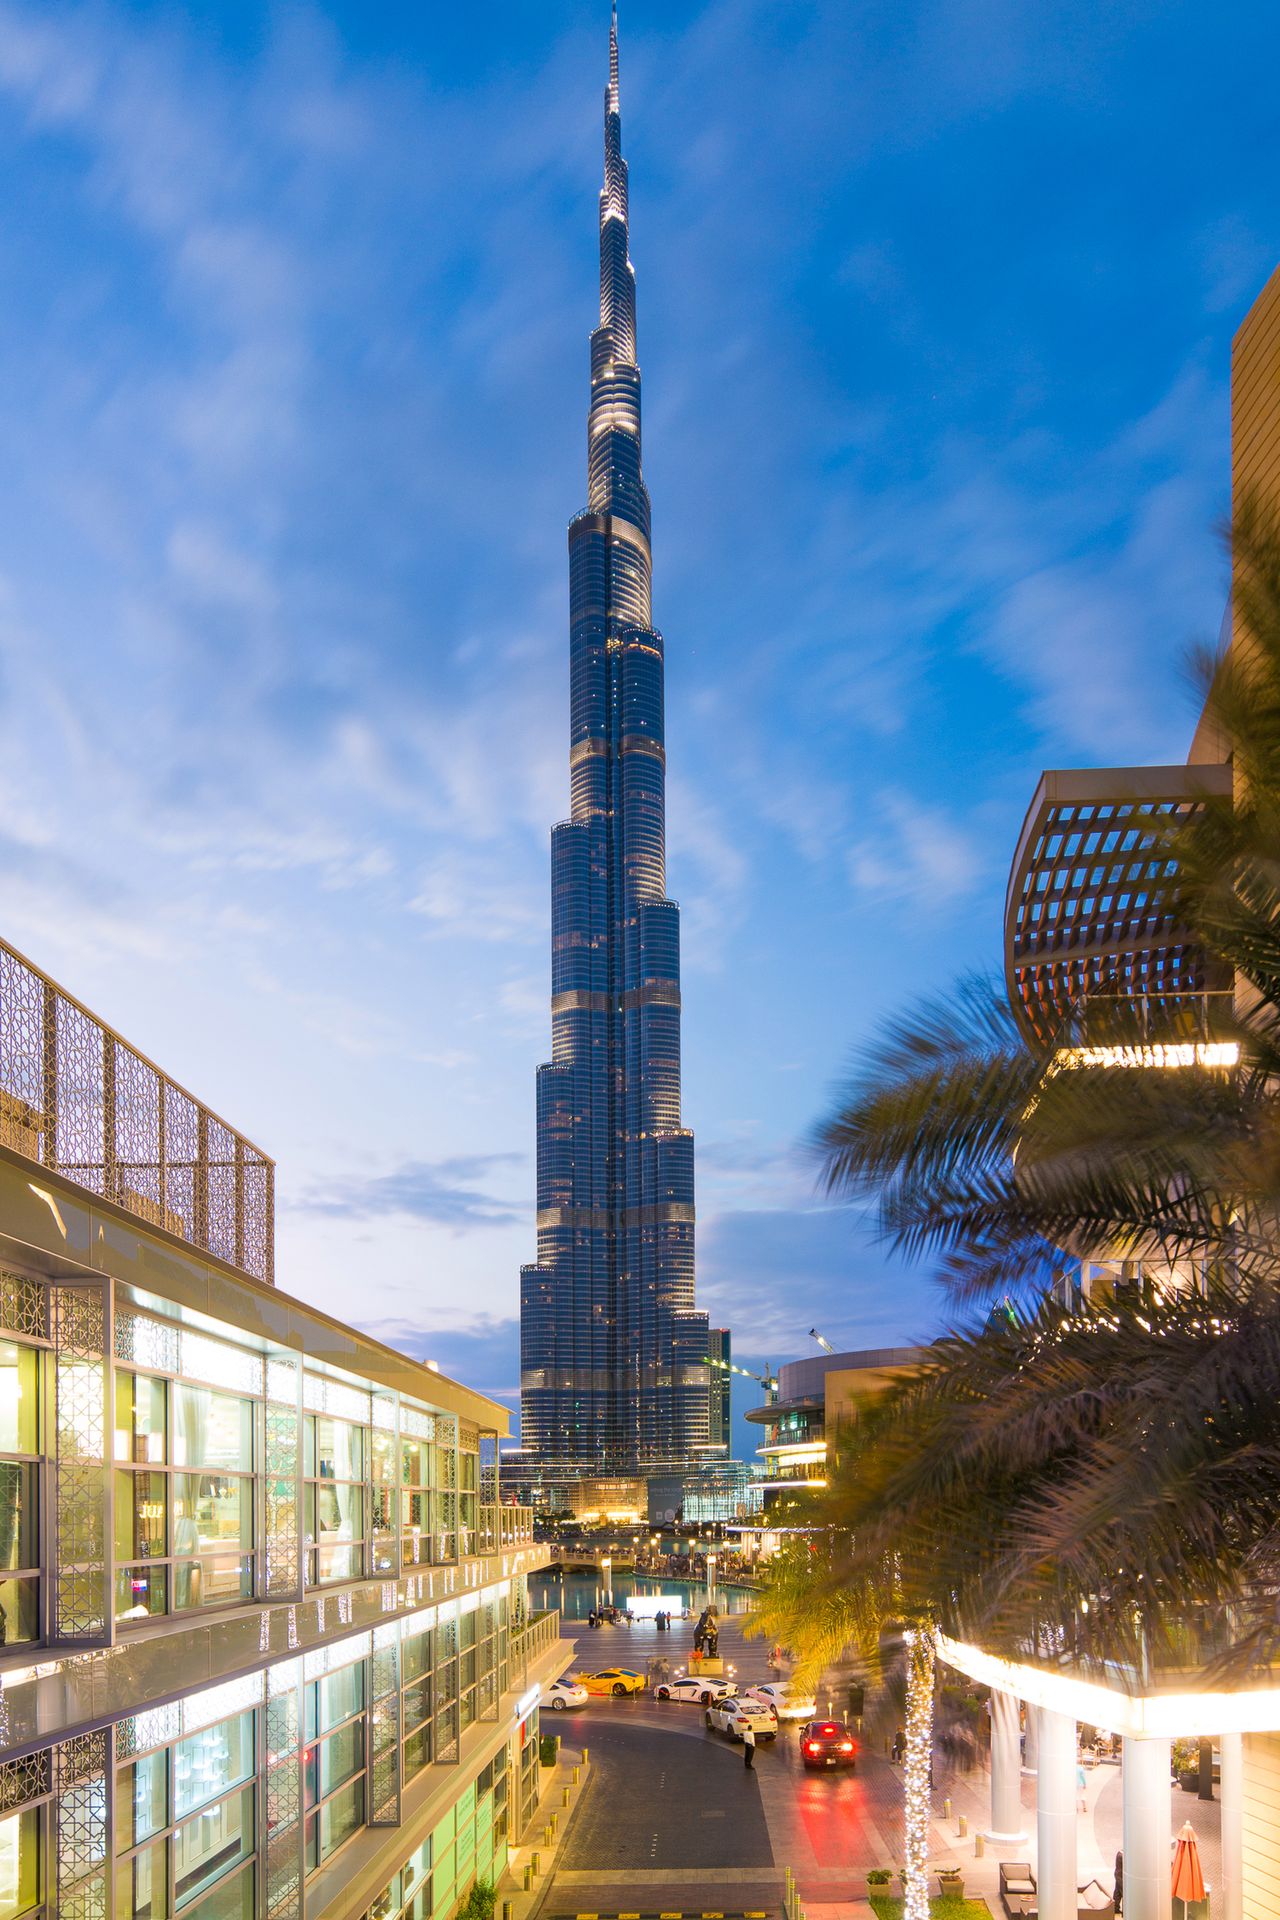 Burj Khalifa to niesamowity budynek - ma ponad 800 metrów i widać go z każdego miejsca w Dubaju. Nagle wszystkie inne budynki, które widzieliśmy stają się mniejsze. Kiedyś sądziłem, że Sky Tower we Wrocławiu jest wysoki, potem World Financial Center w Szanghaju zrobił na mnie ogromne wrażenie, ale to i tak nic w porównaniu z Burj Khalifą.